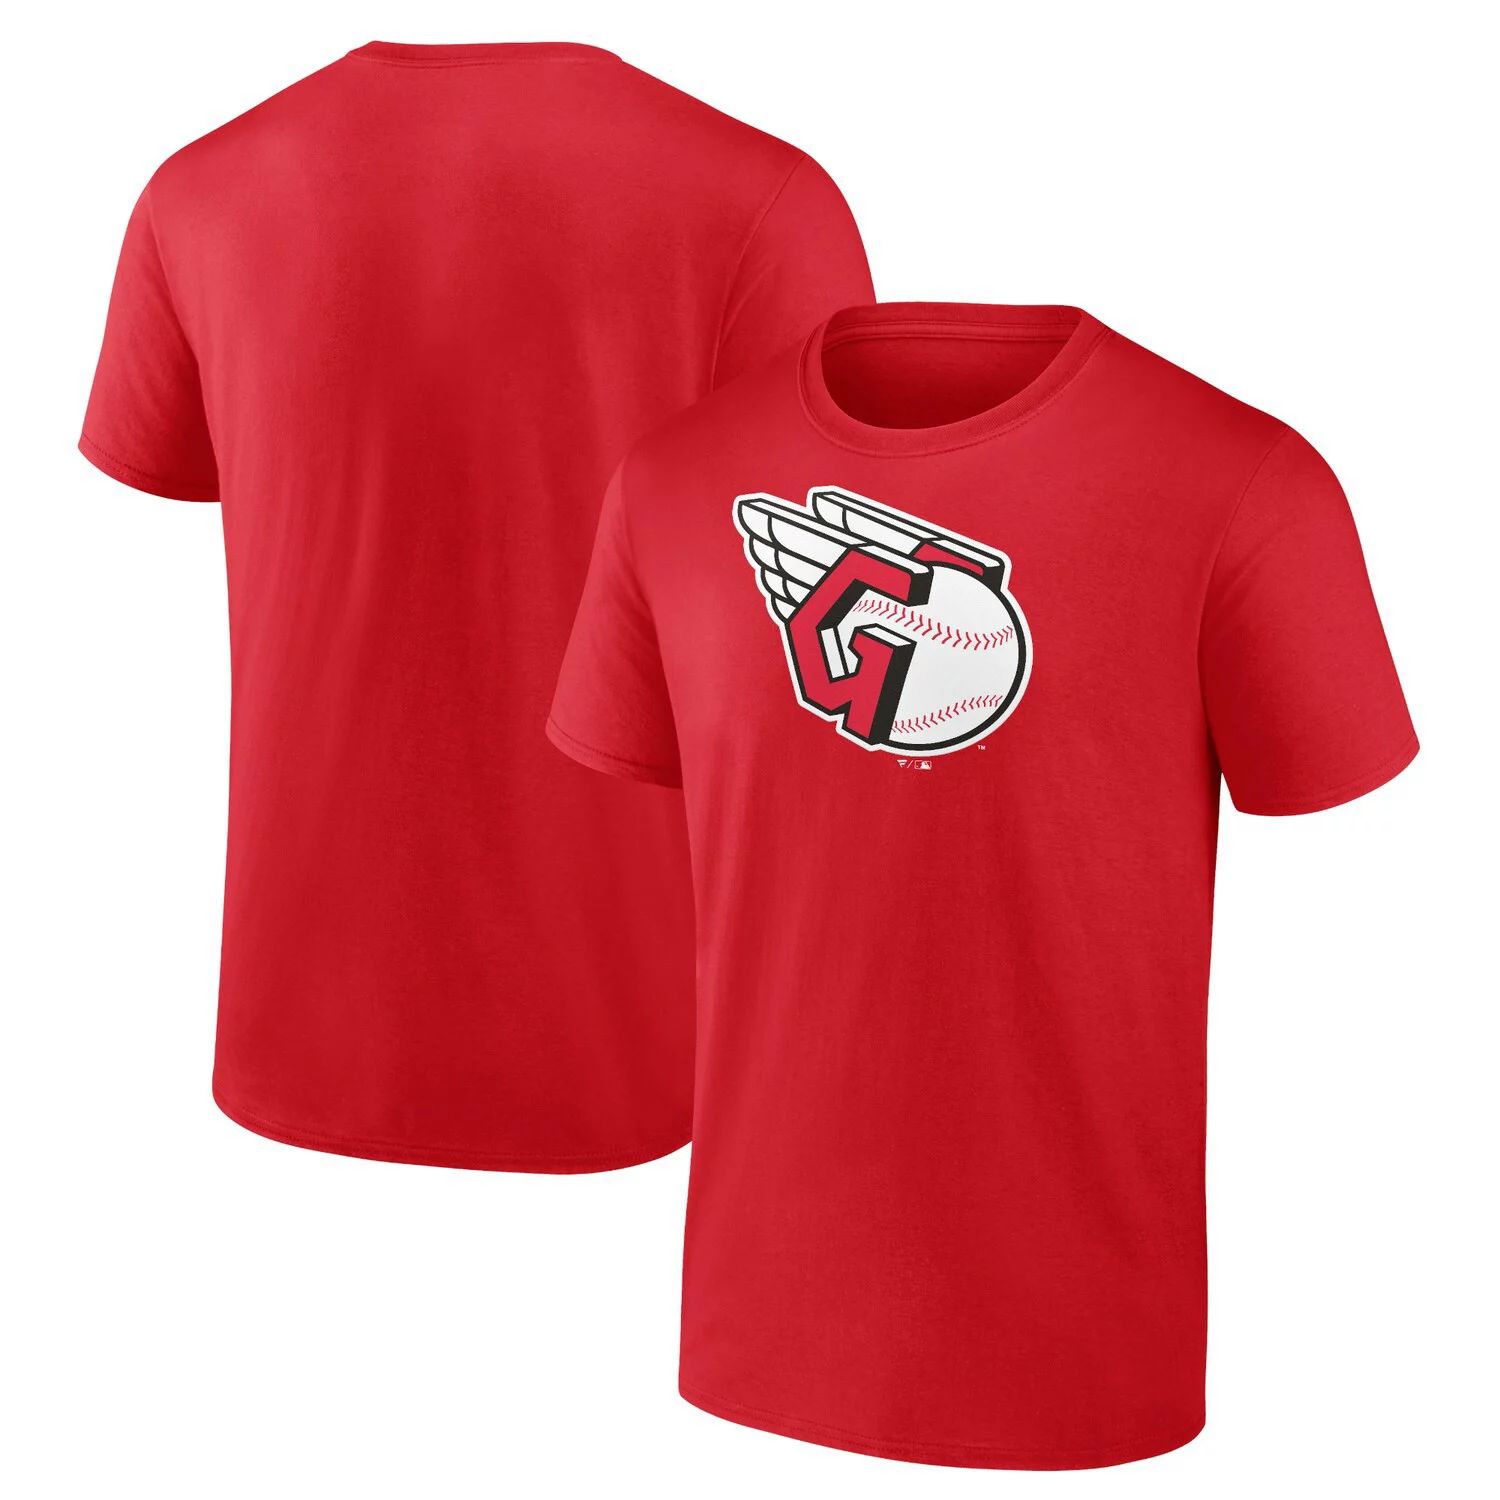 Мужская красная футболка с официальным логотипом Fanatics Cleveland Guardians цена и фото